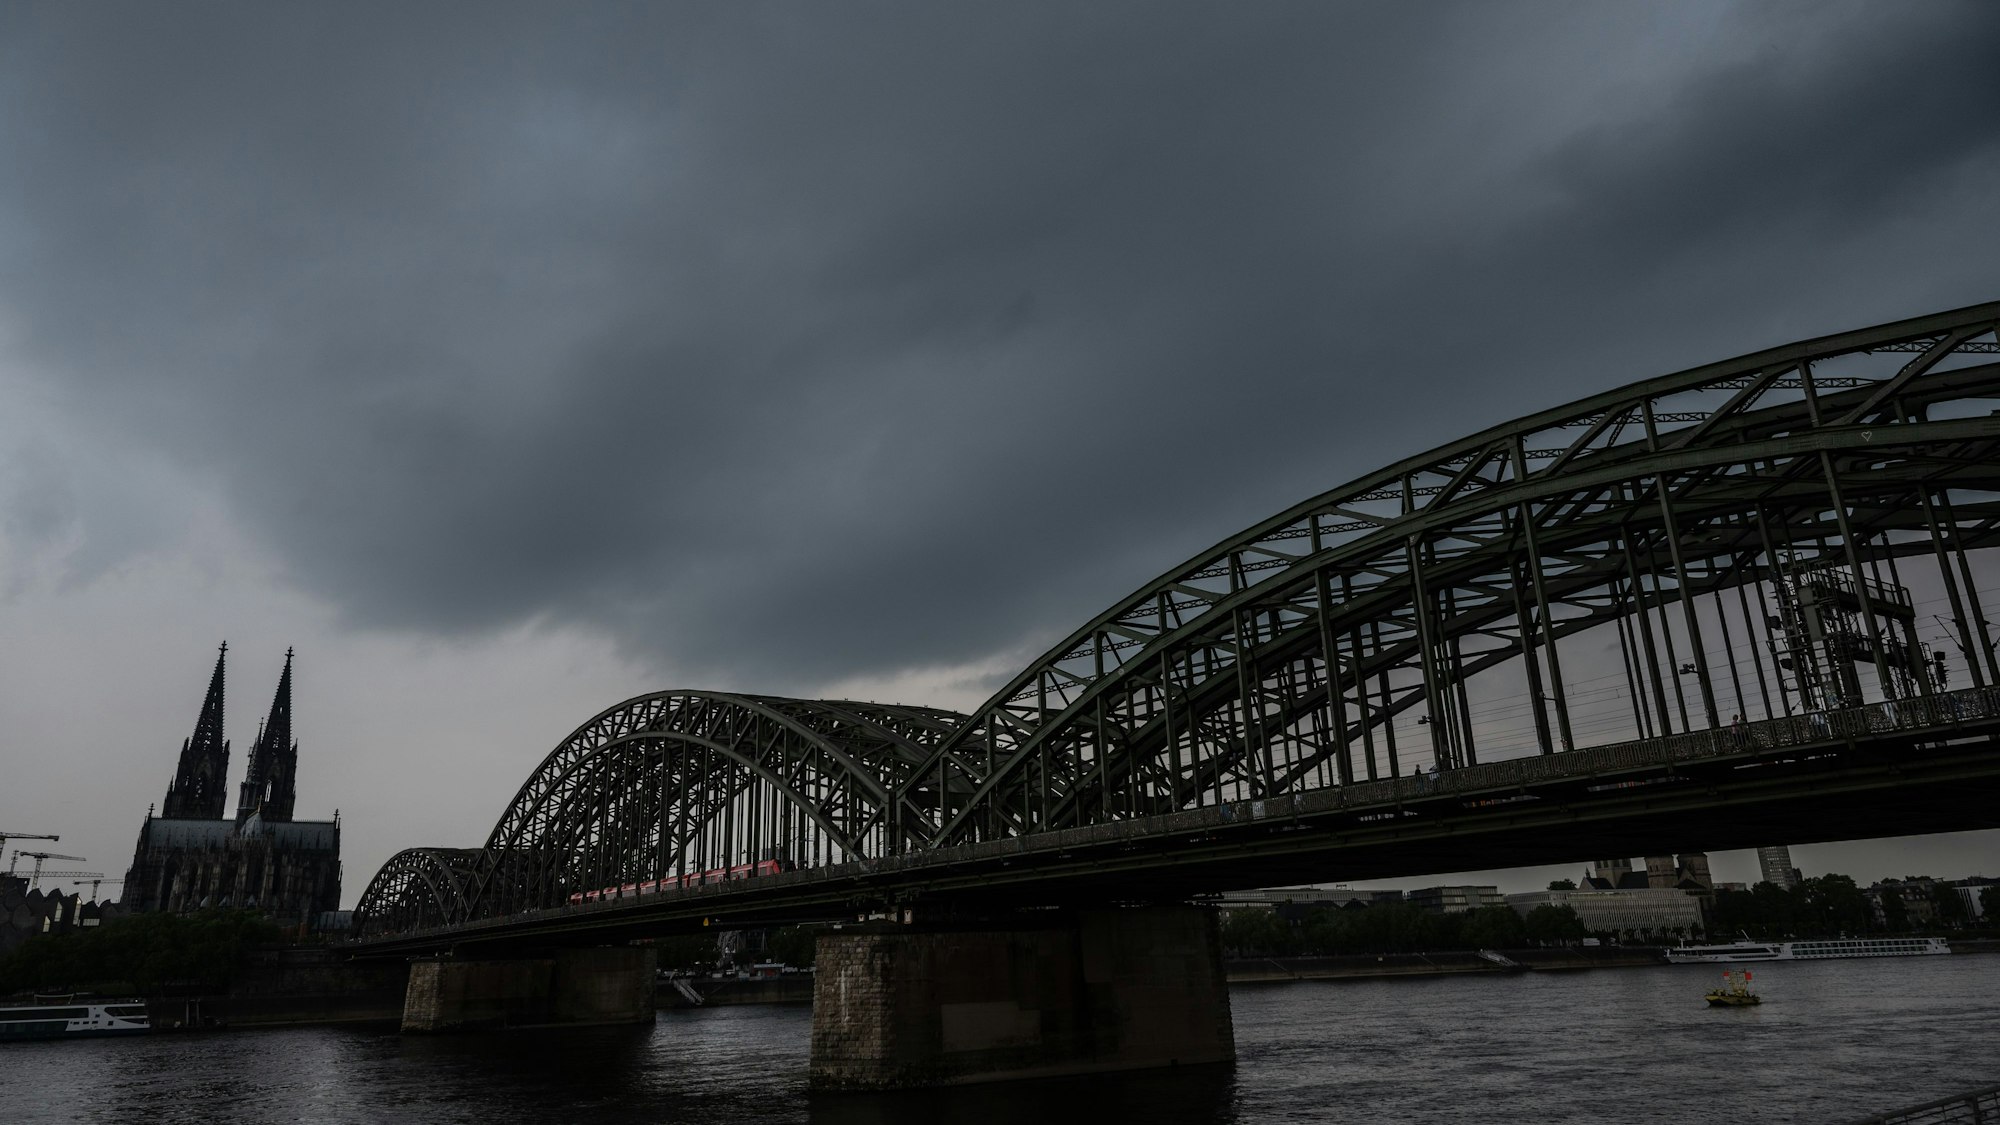 Dunkle Gewitterwolken ziehen über dem Dom auf. Der Deutsche Wetterdienst warnt vor schweren Gewittern im Rheinland.